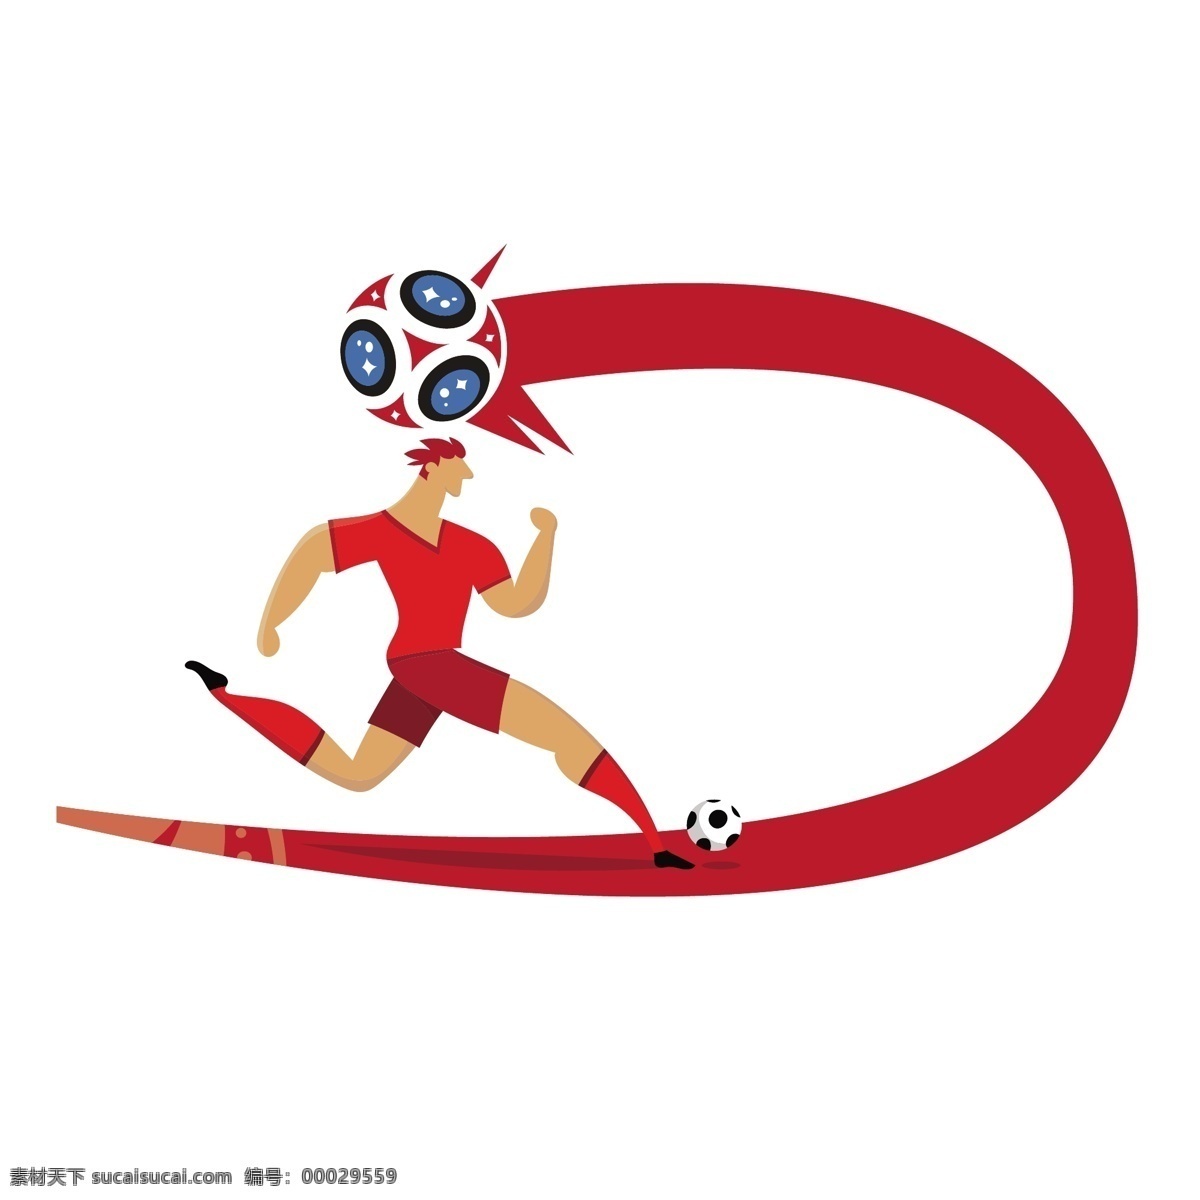 红色 世界杯 矢量 卡通 卡通足球 足球 足球世界杯 俄罗斯 俄罗斯世界杯 2018 卡通世界杯